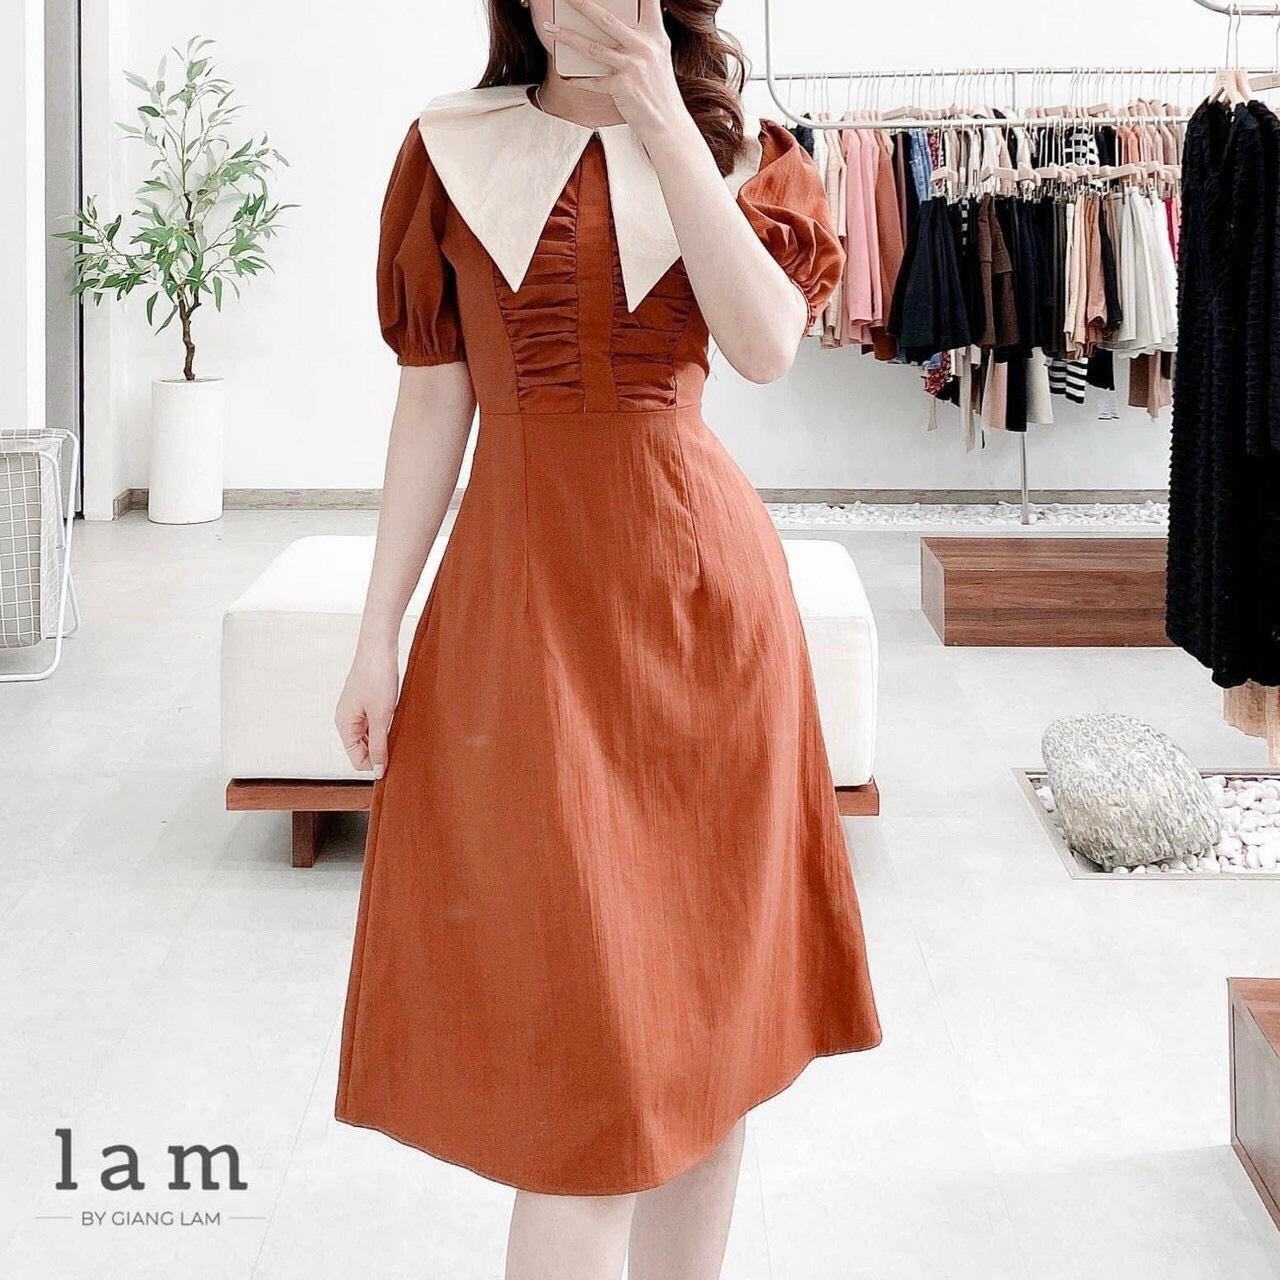 NEW IN TOWN - Cami Dress 🧡 Một chiếc váy màu cam đất cực kì cực kì tôn da  đây các cậu ơi 🧡 Tông màu trầm... | Instagram